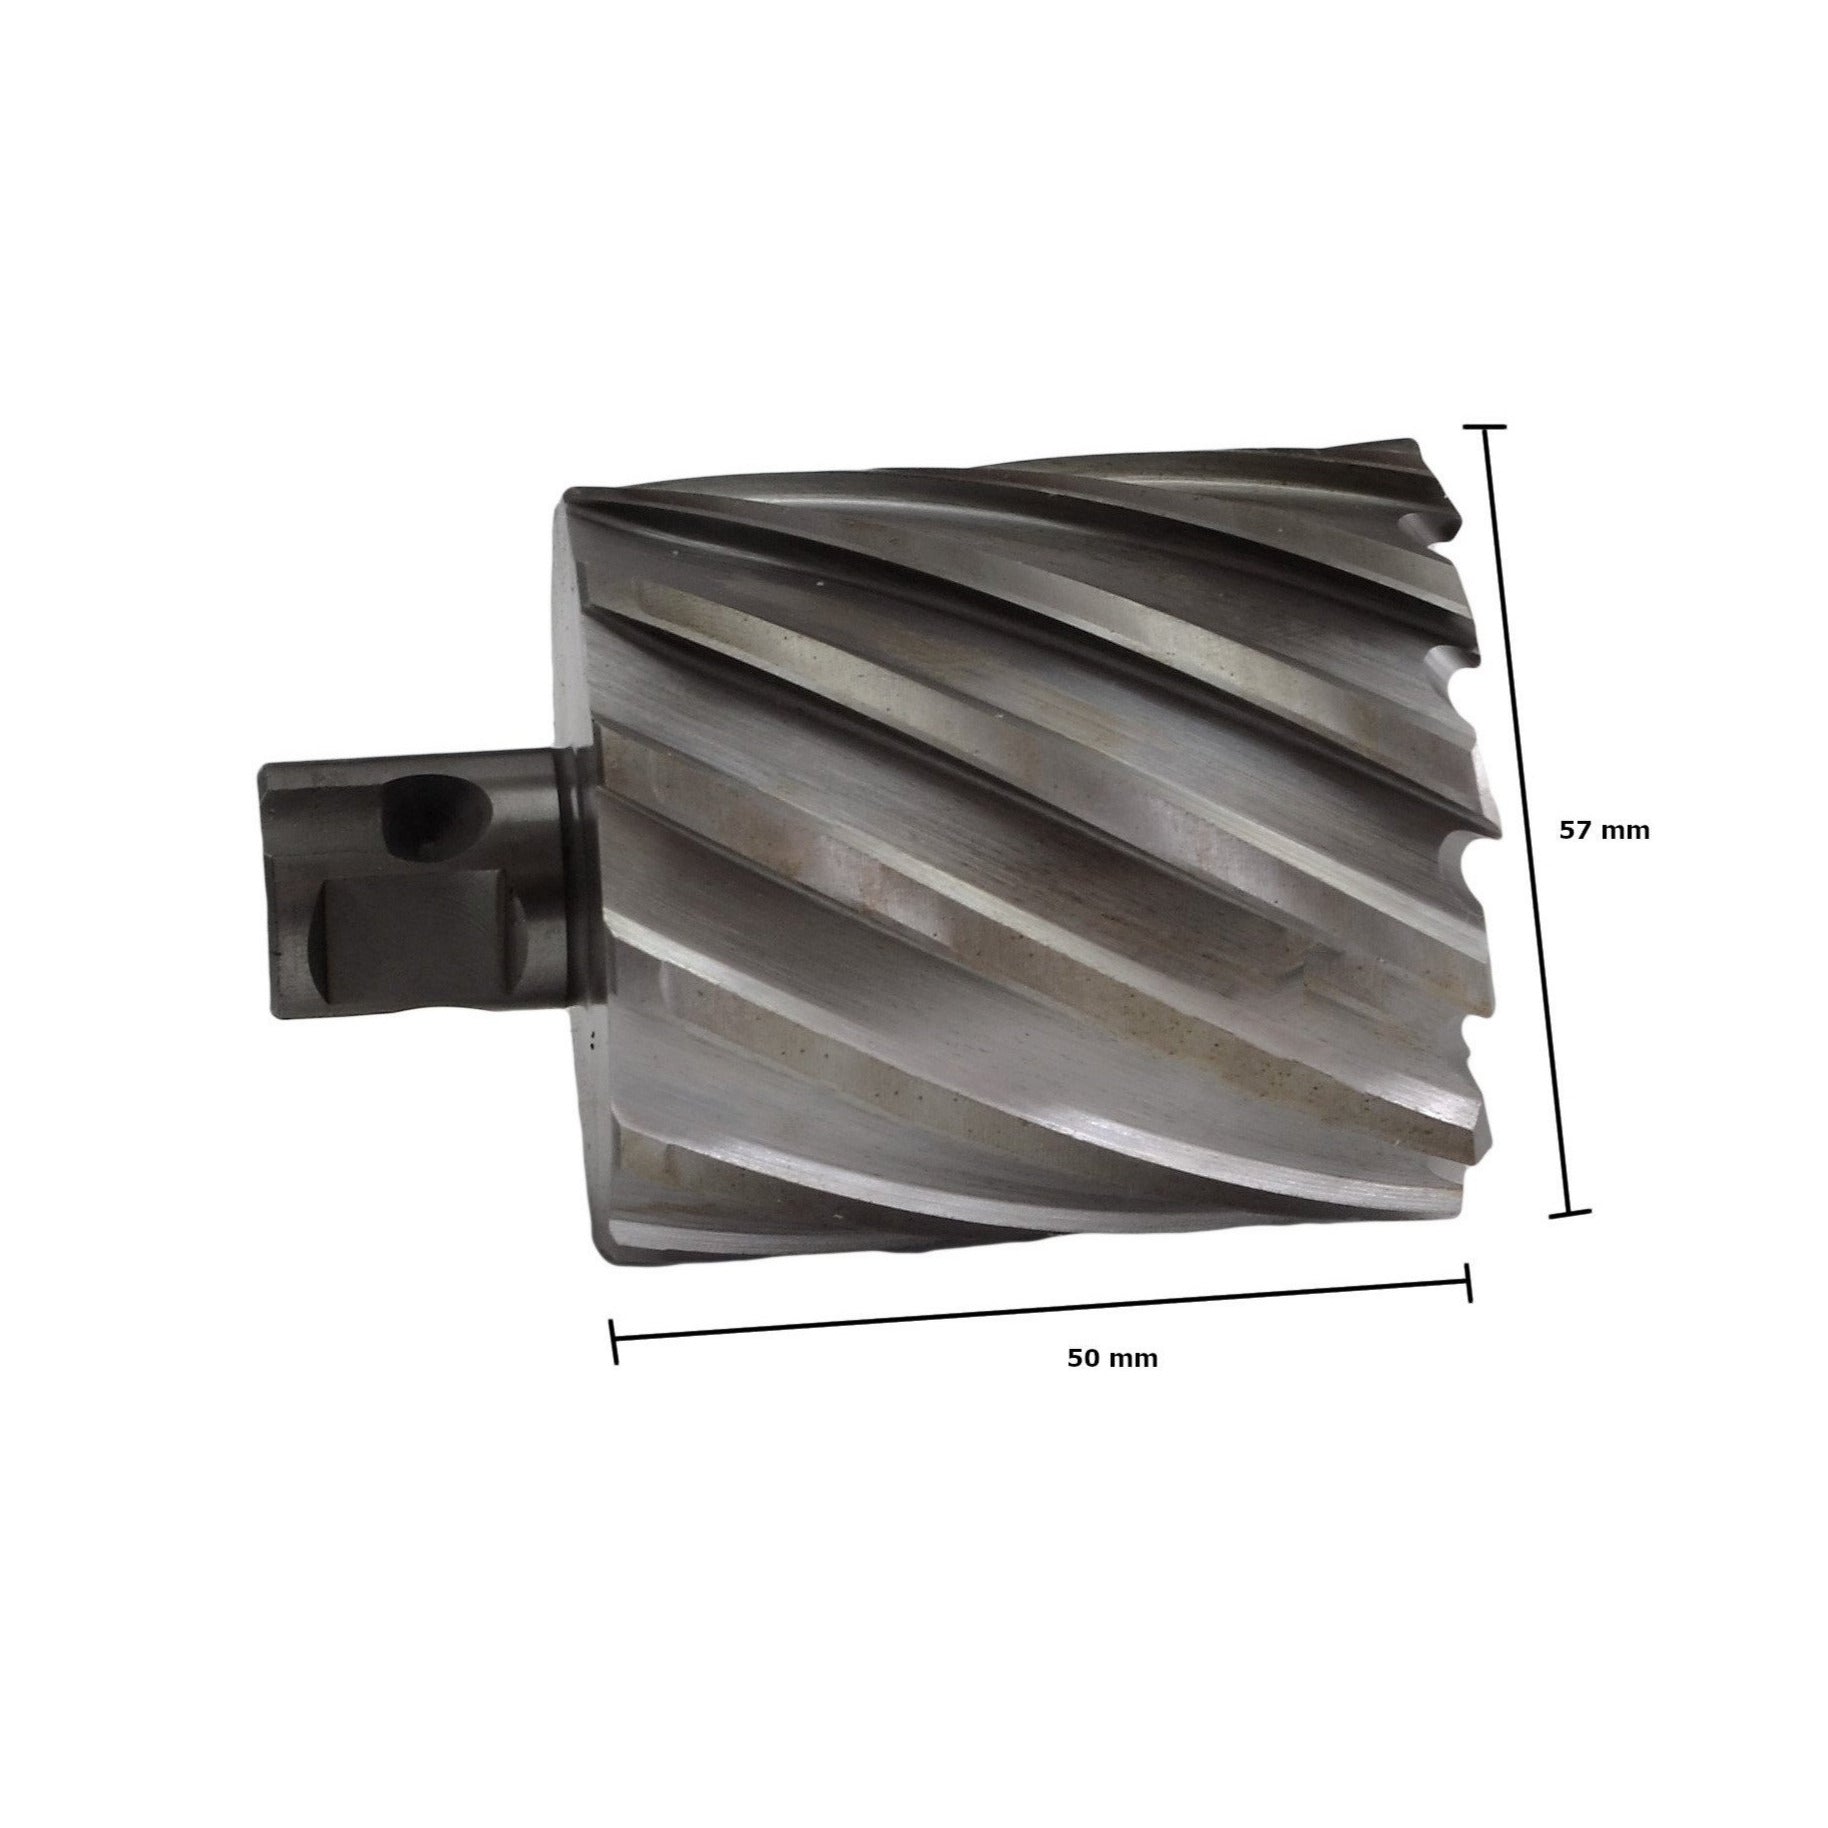 annular cutter 57x50mm broach cutter HSS CNC rotabroach slugger magnetic dril universal shank industrial metalwork suplies